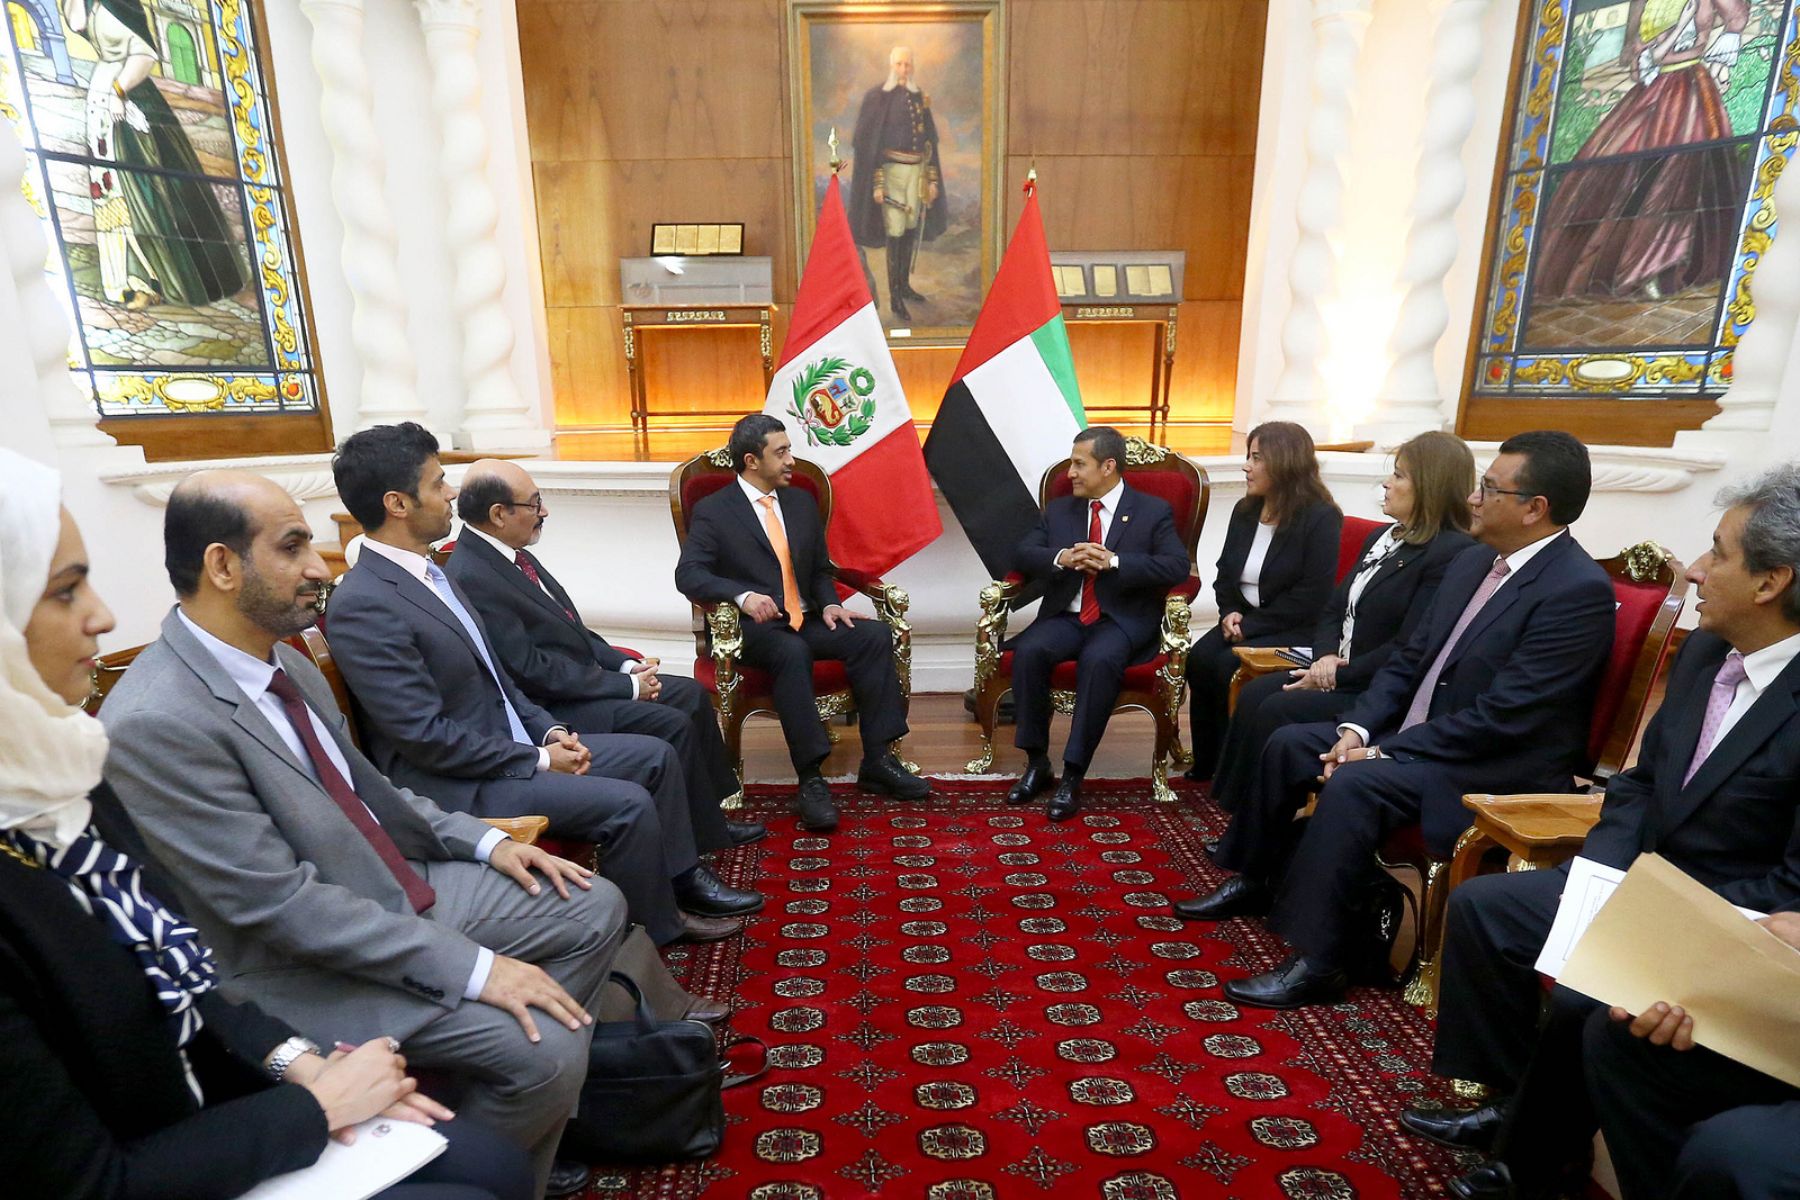 Canciller de los Emiratos Árabes Unidos, Sheikh Abdullah Bin Zayed Nahyan, es recibido en audiencia por el presidente Ollanta Humala en Palacio de Gobierno